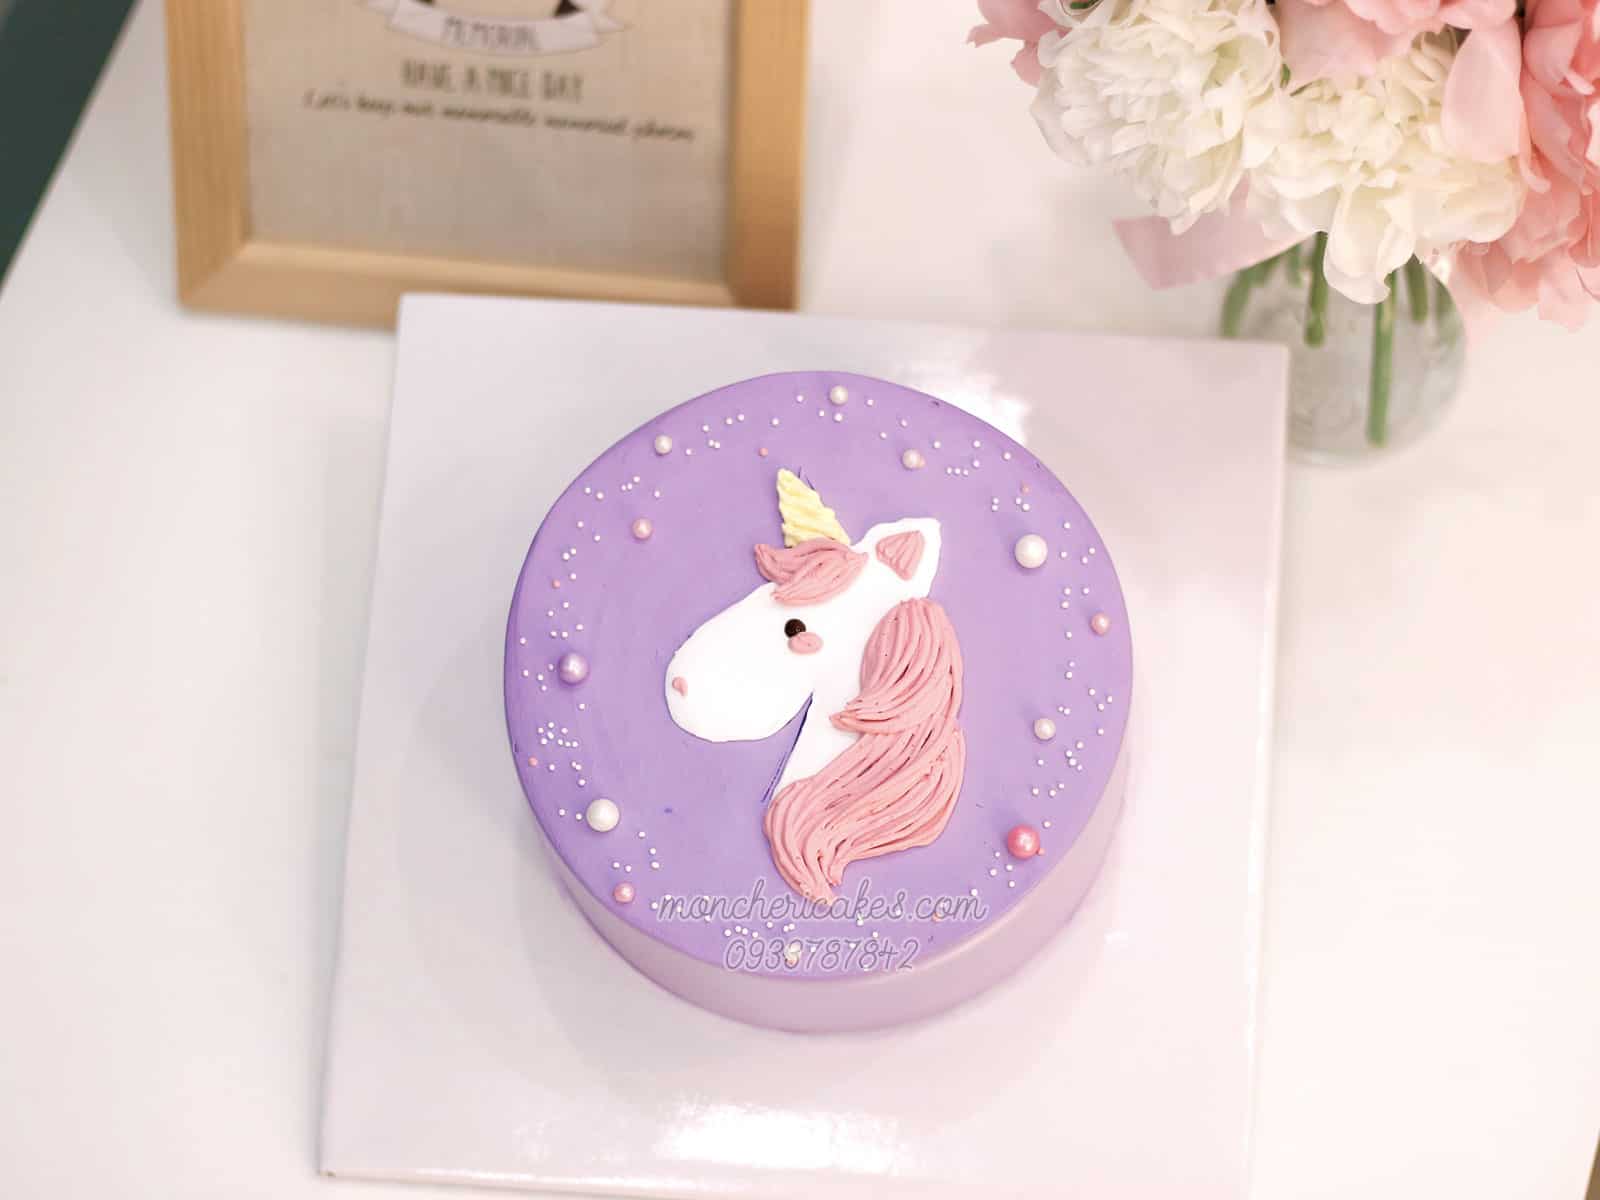 Bánh kem unicorn là một sự kết hợp tinh tế giữa bánh kem và hình ảnh những chú kỳ lân đáng yêu. Không chỉ lung linh mà còn vô cùng ngon miệng, sẽ đem lại cho bạn một trải nghiệm tuyệt vời. Hãy đến và khám phá ngay!